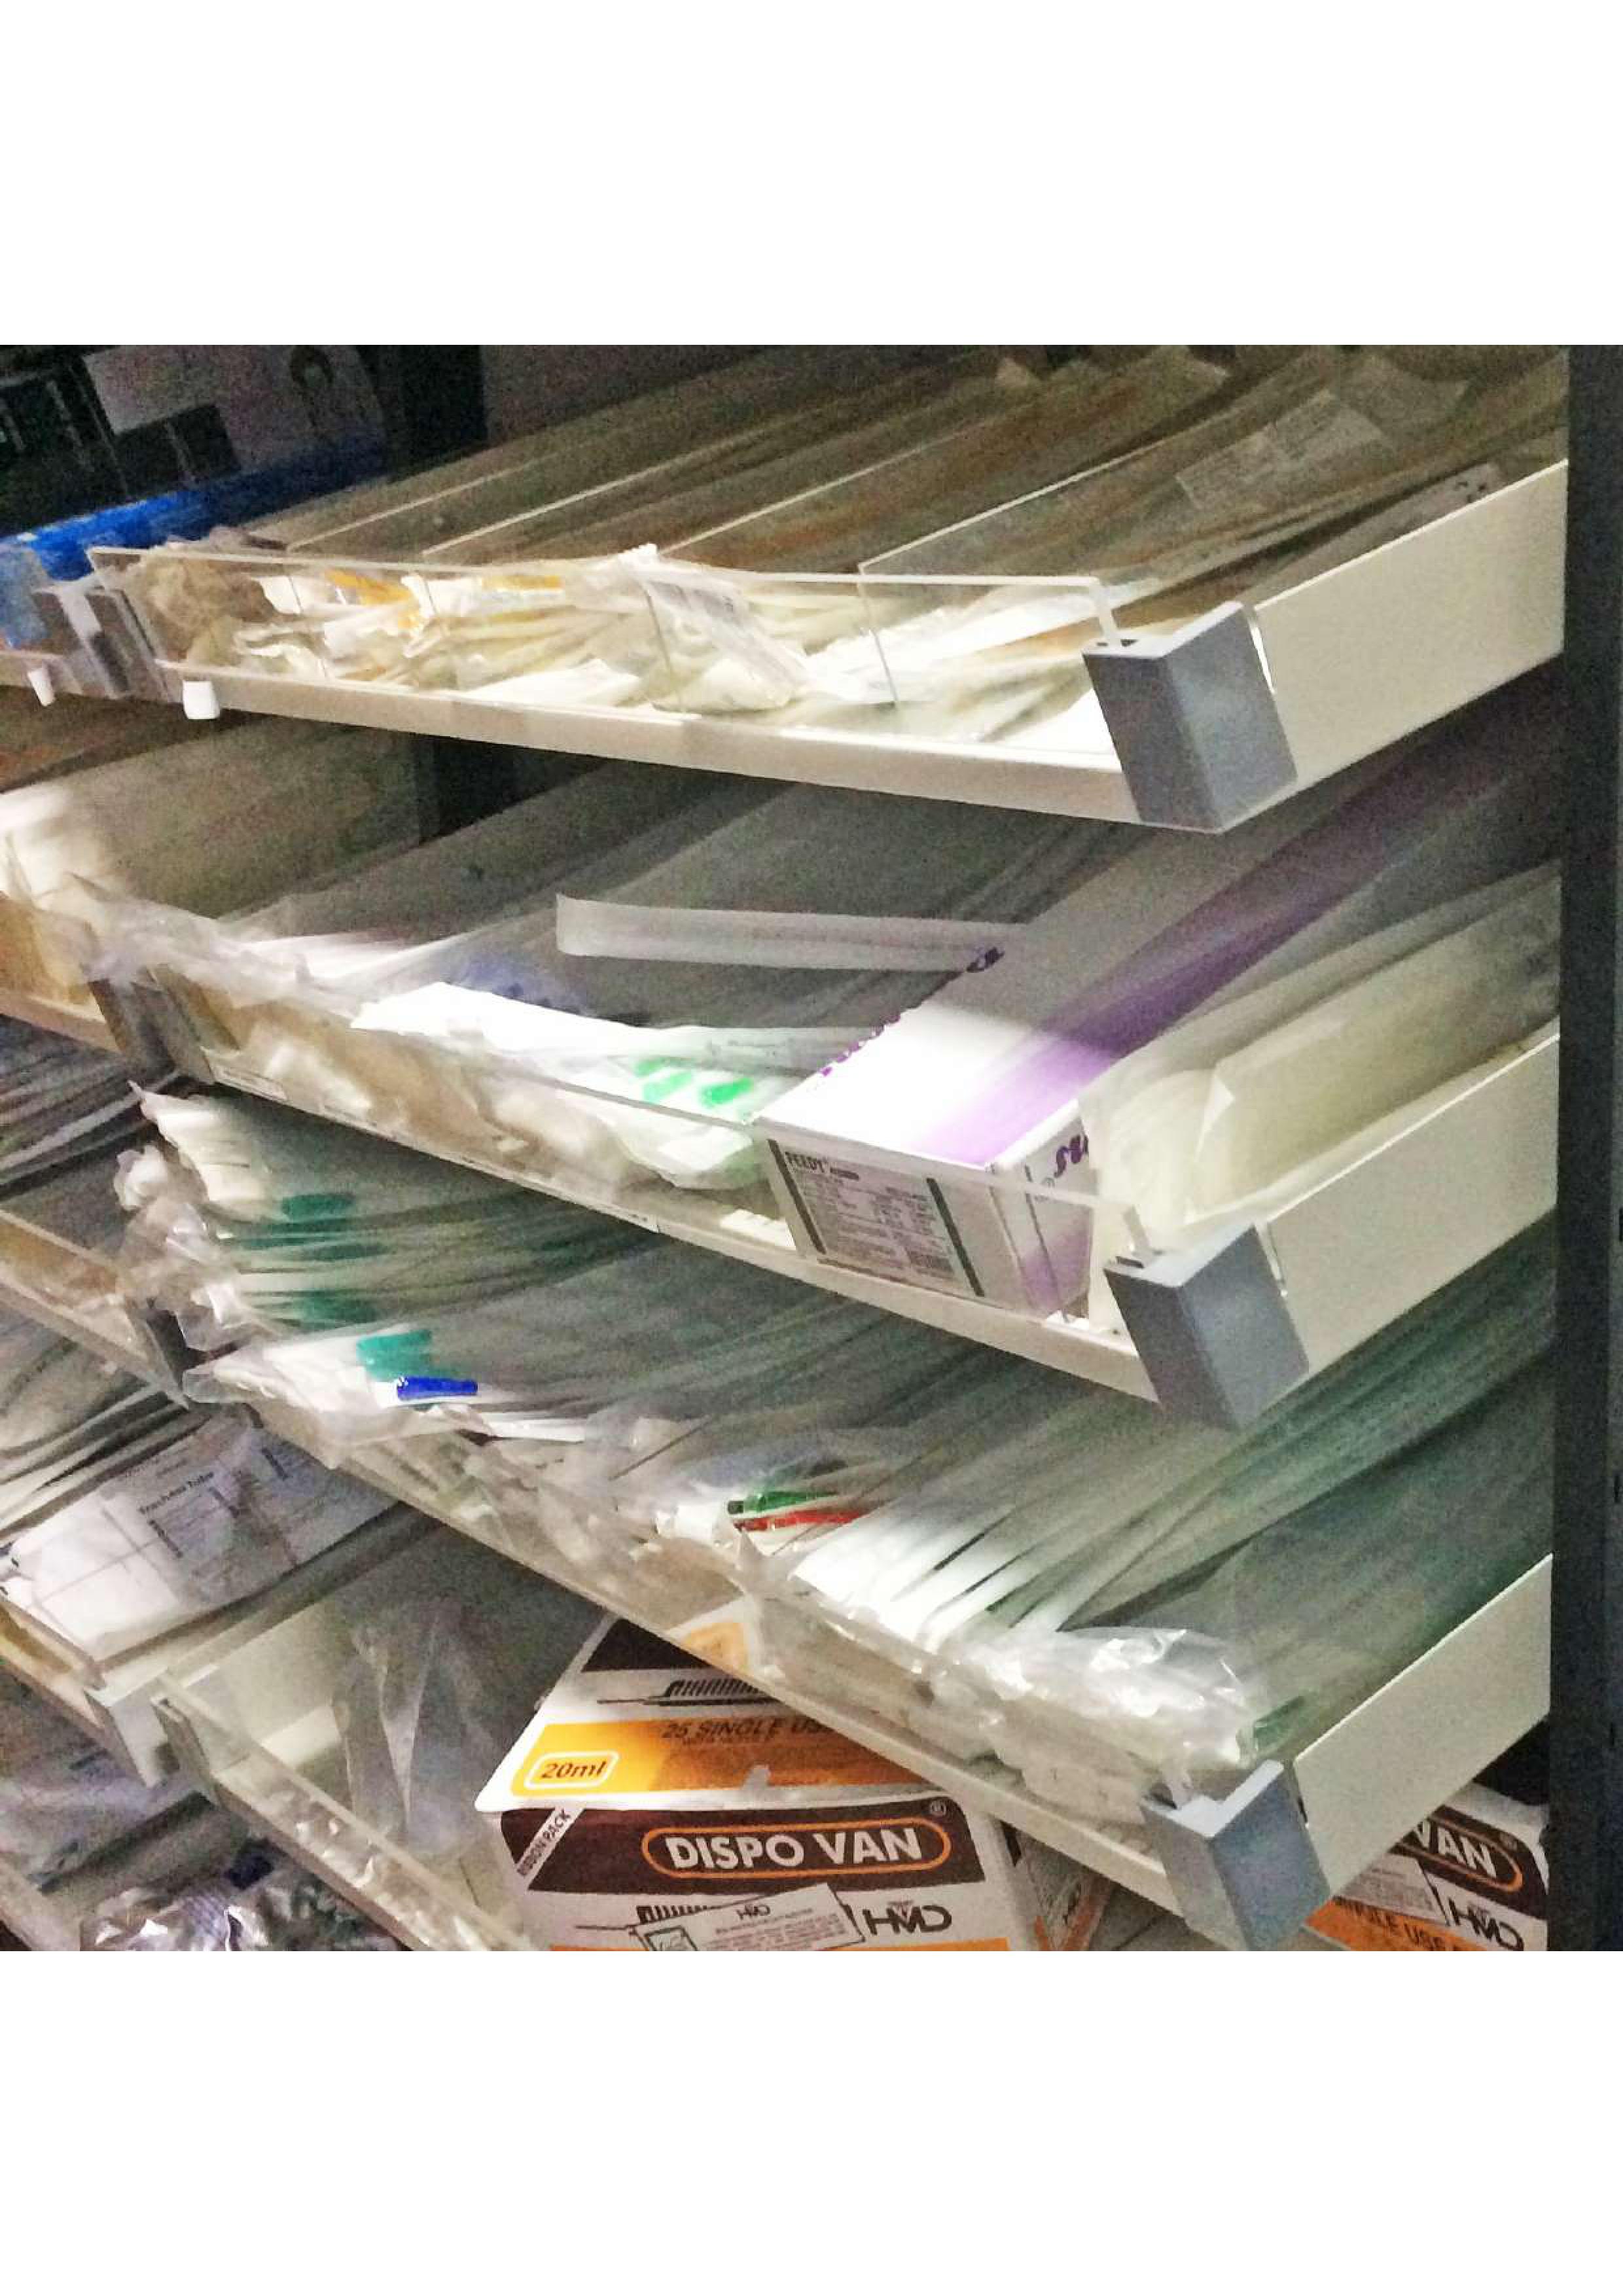 Pharmacy storage racks